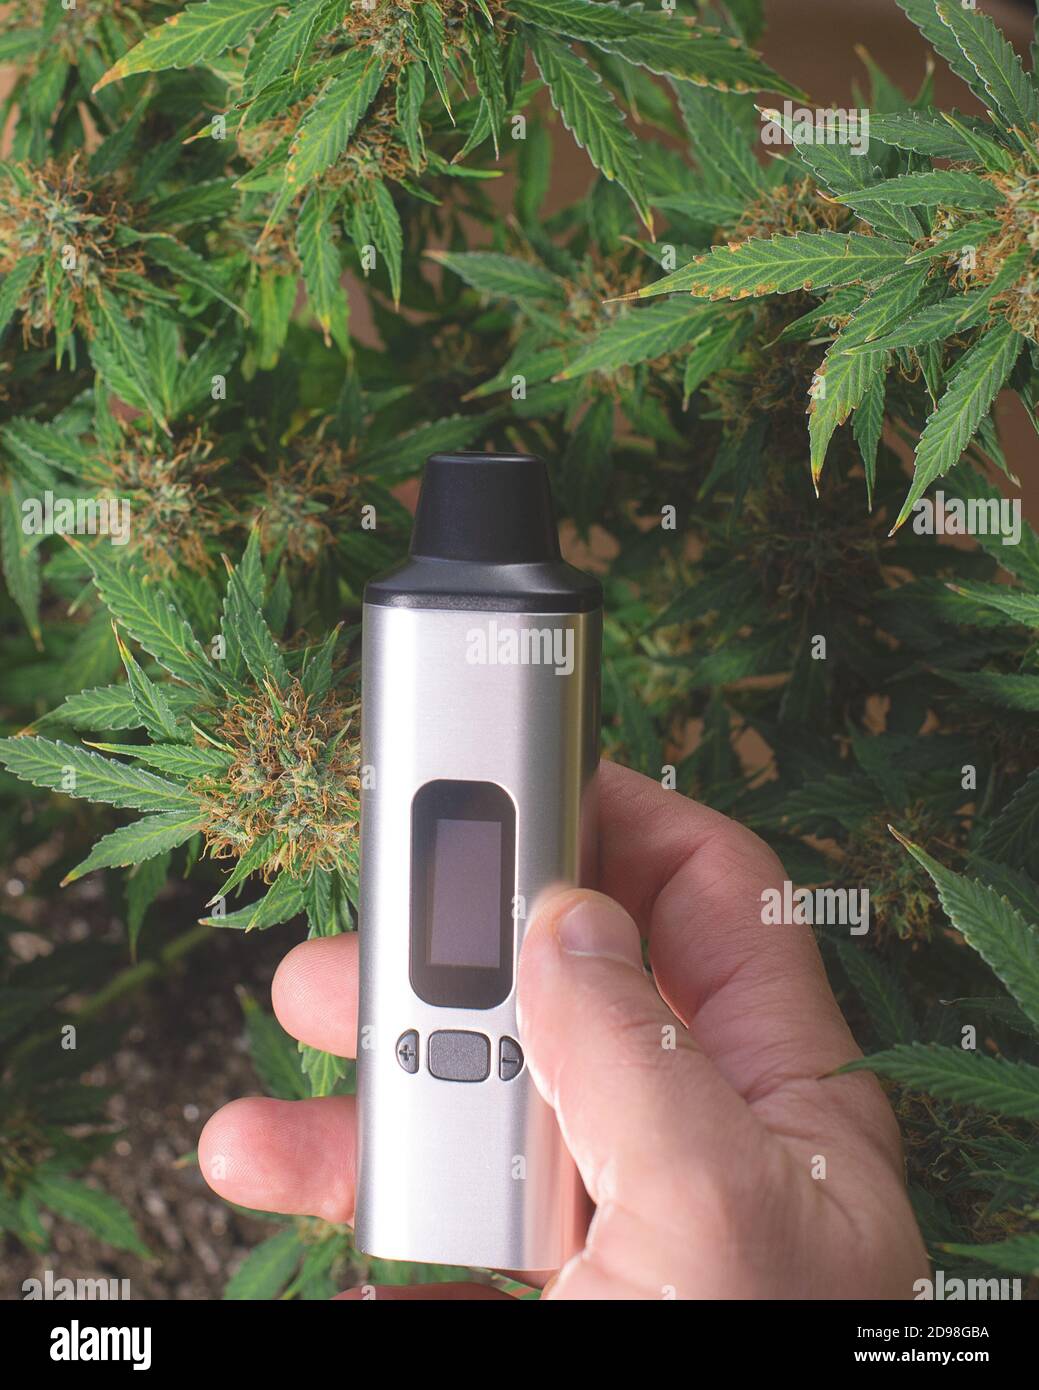 vaporizador electrónico portátil para fumar hierbas secas en la mano contra  el fondo de un arbusto de marihuana Fotografía de stock - Alamy